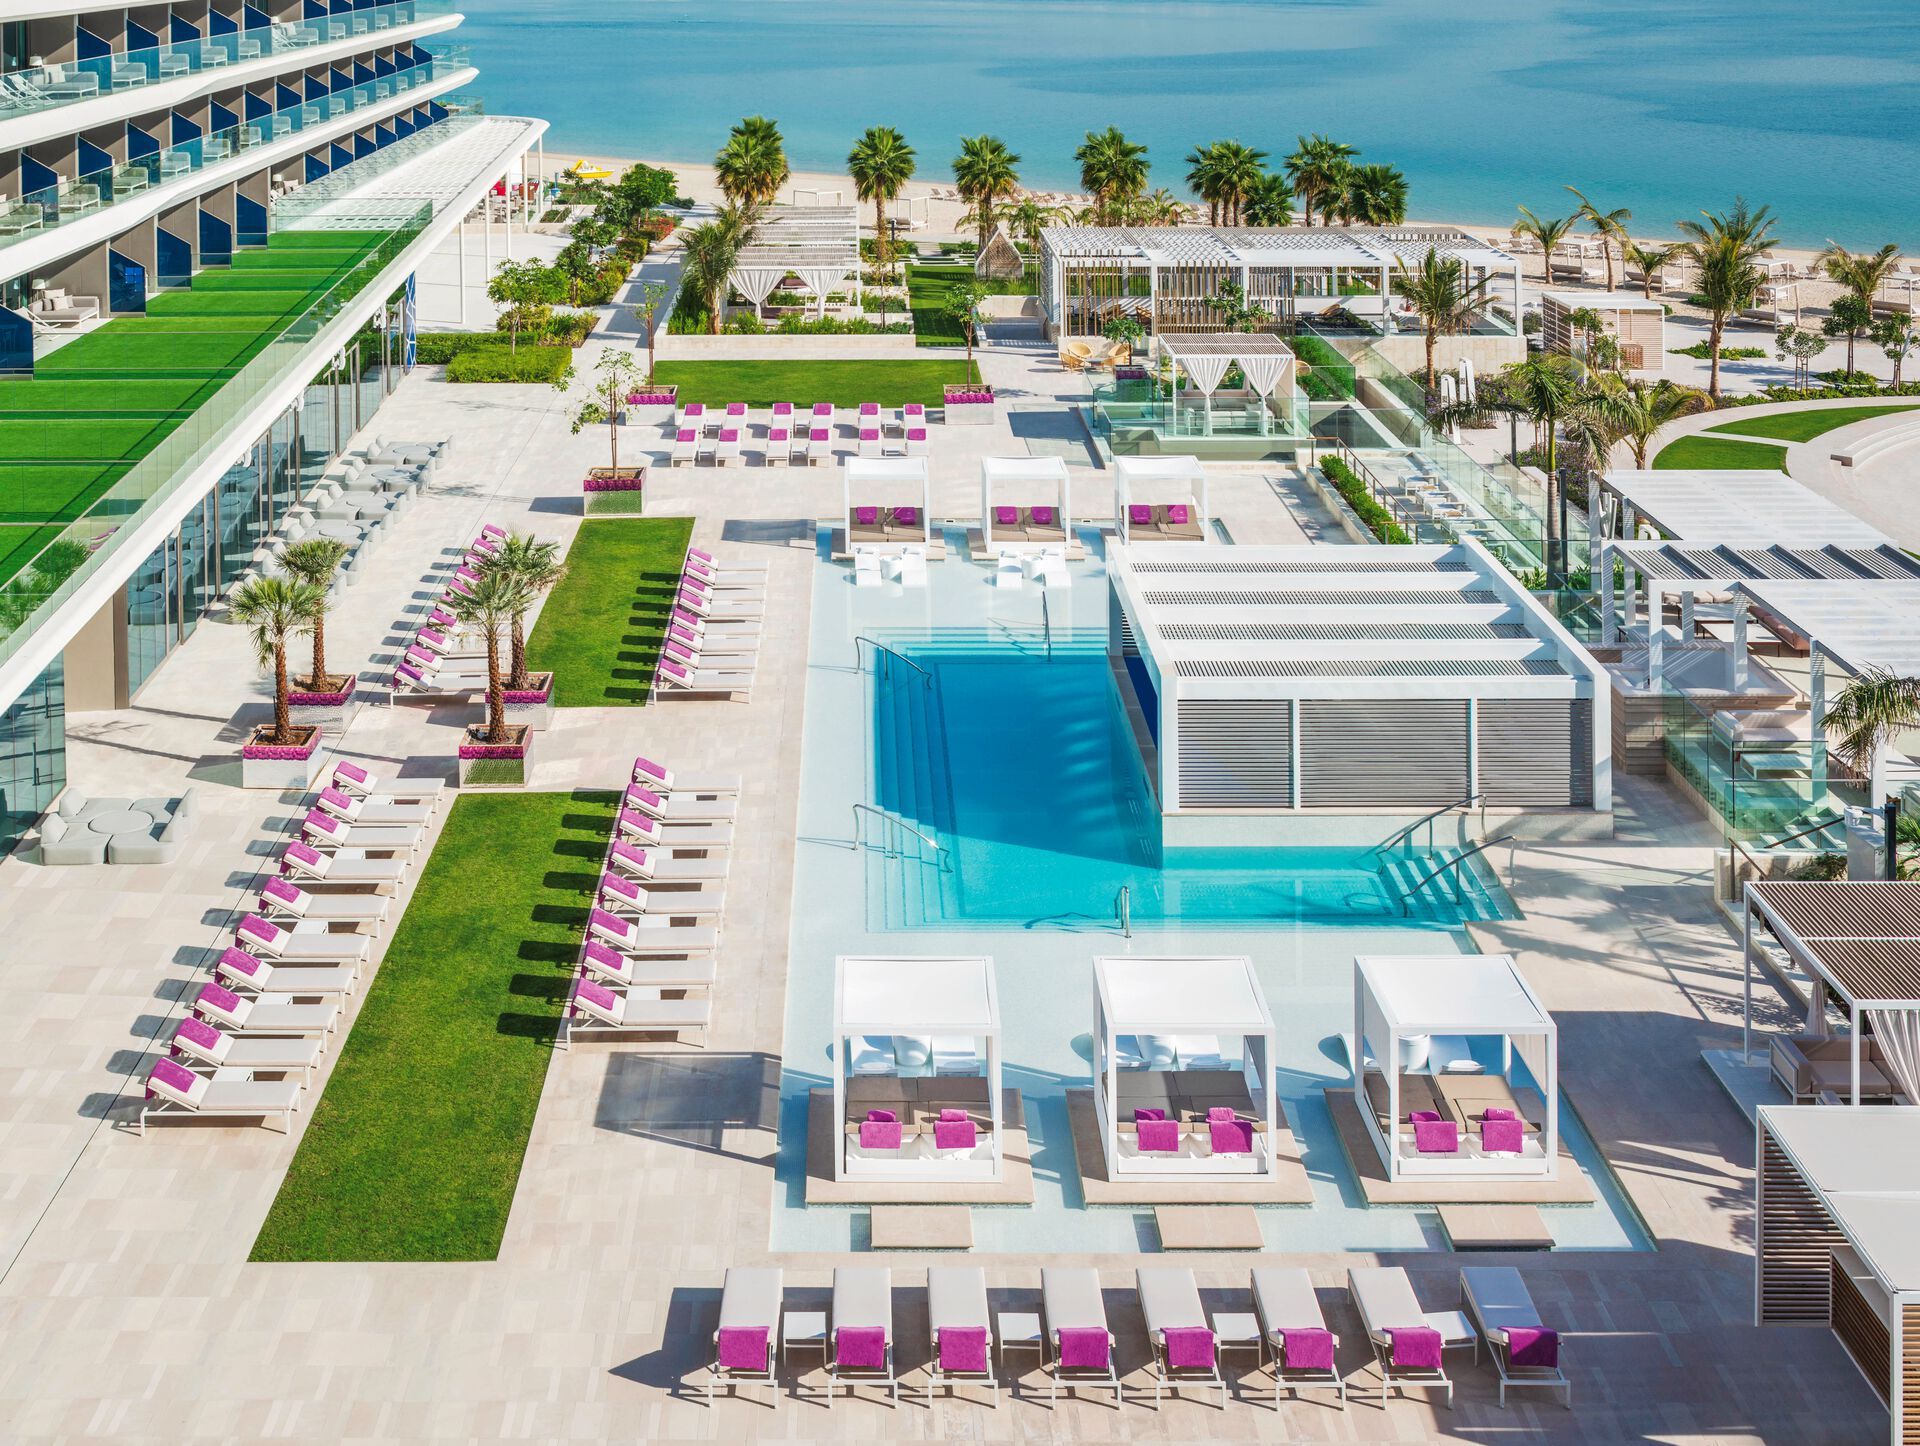 Emirats Arabes Unis - Dubaï - Hôtel W Dubai - The Palm 5*